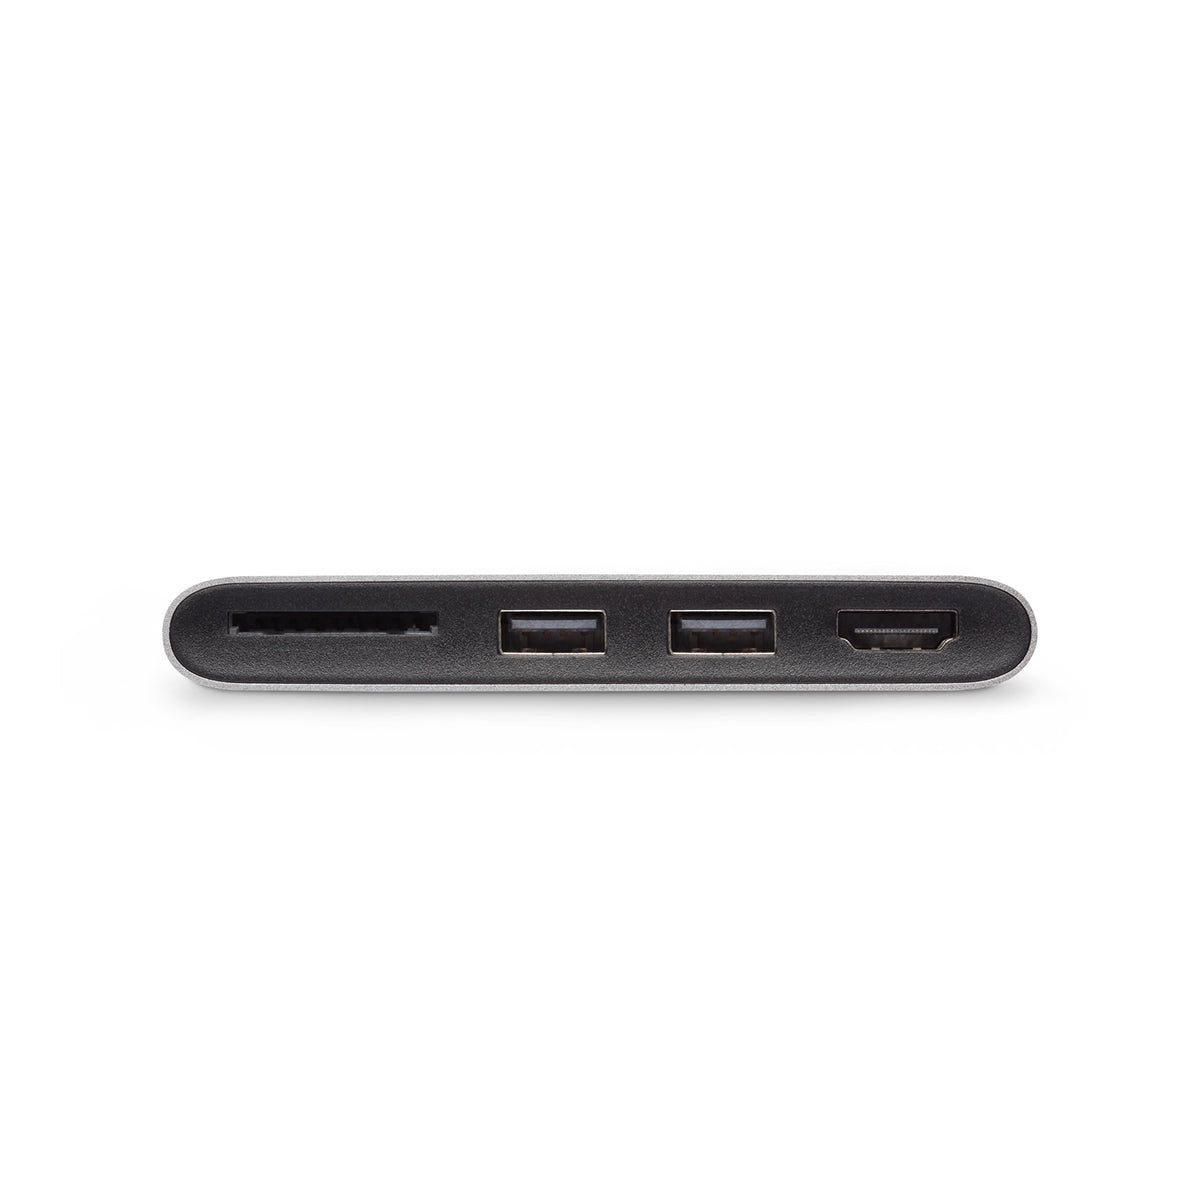 MOSHI USB C Multimedia Adapter - Titanium Gray